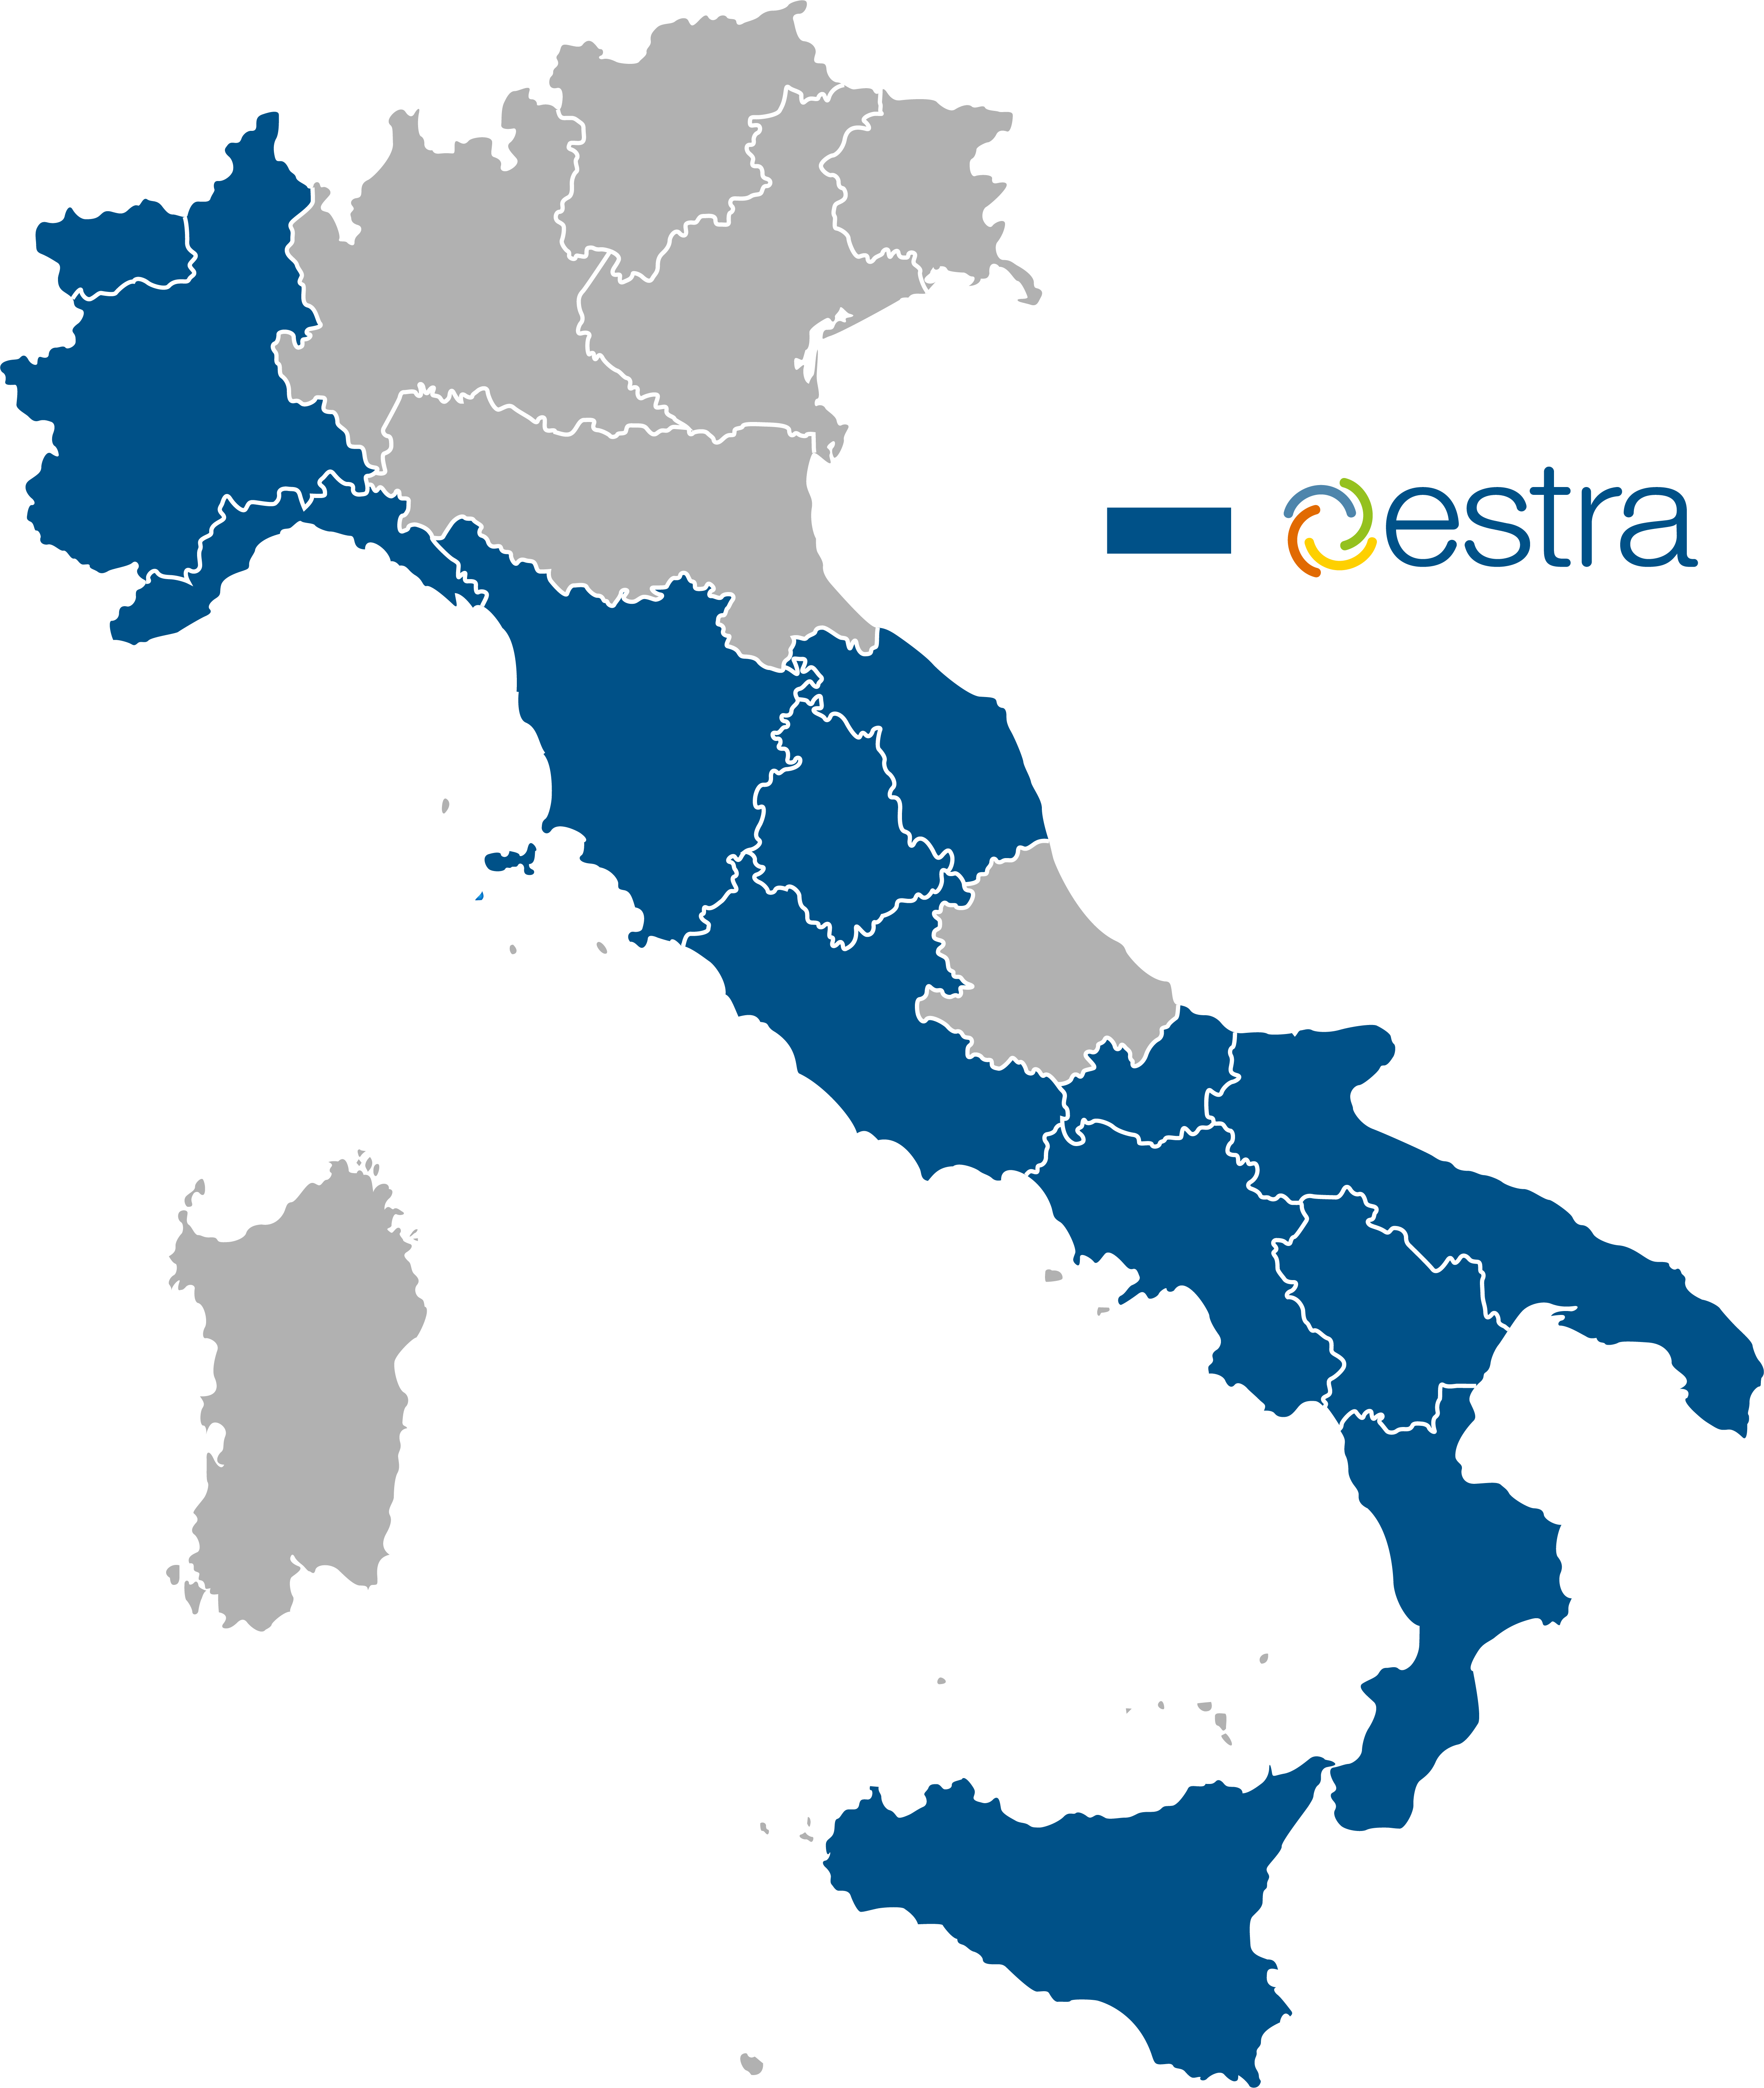 Regioni fornite da Estra (Immagine da comunicato)